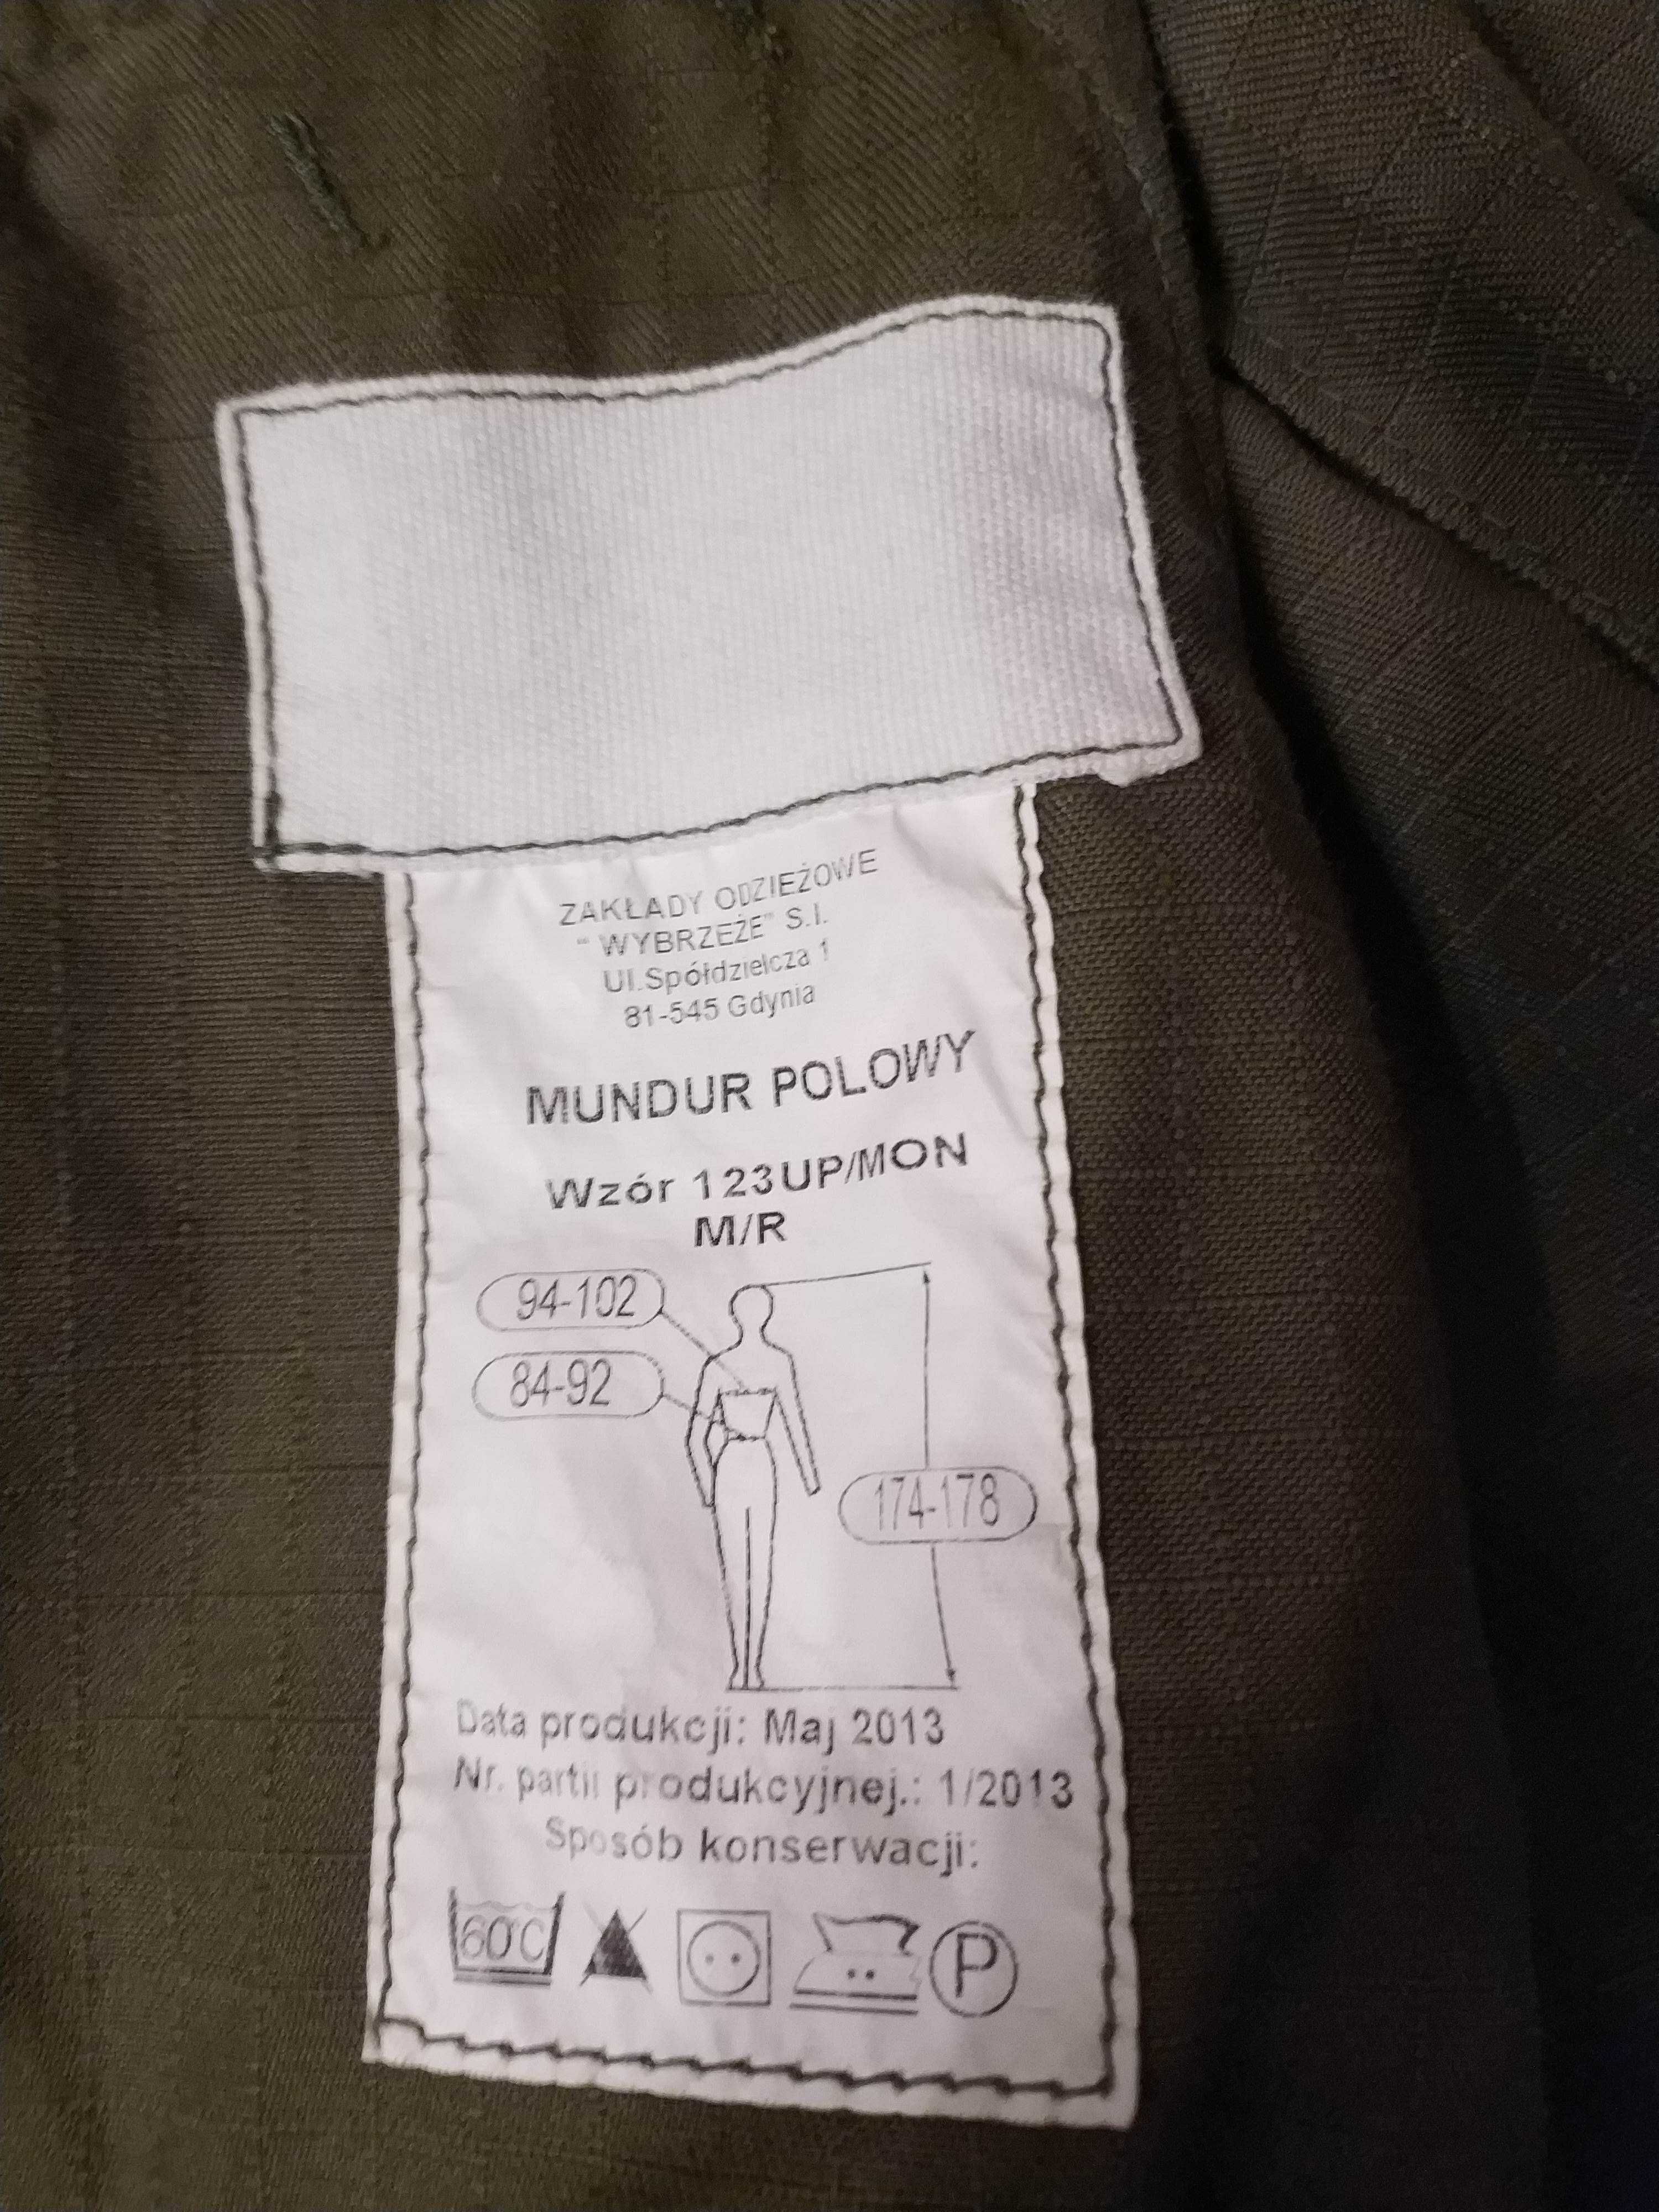 Mundur polowy wzór 123 UP/MON rozmiar M/R 2013 bluza koszula wojskowa